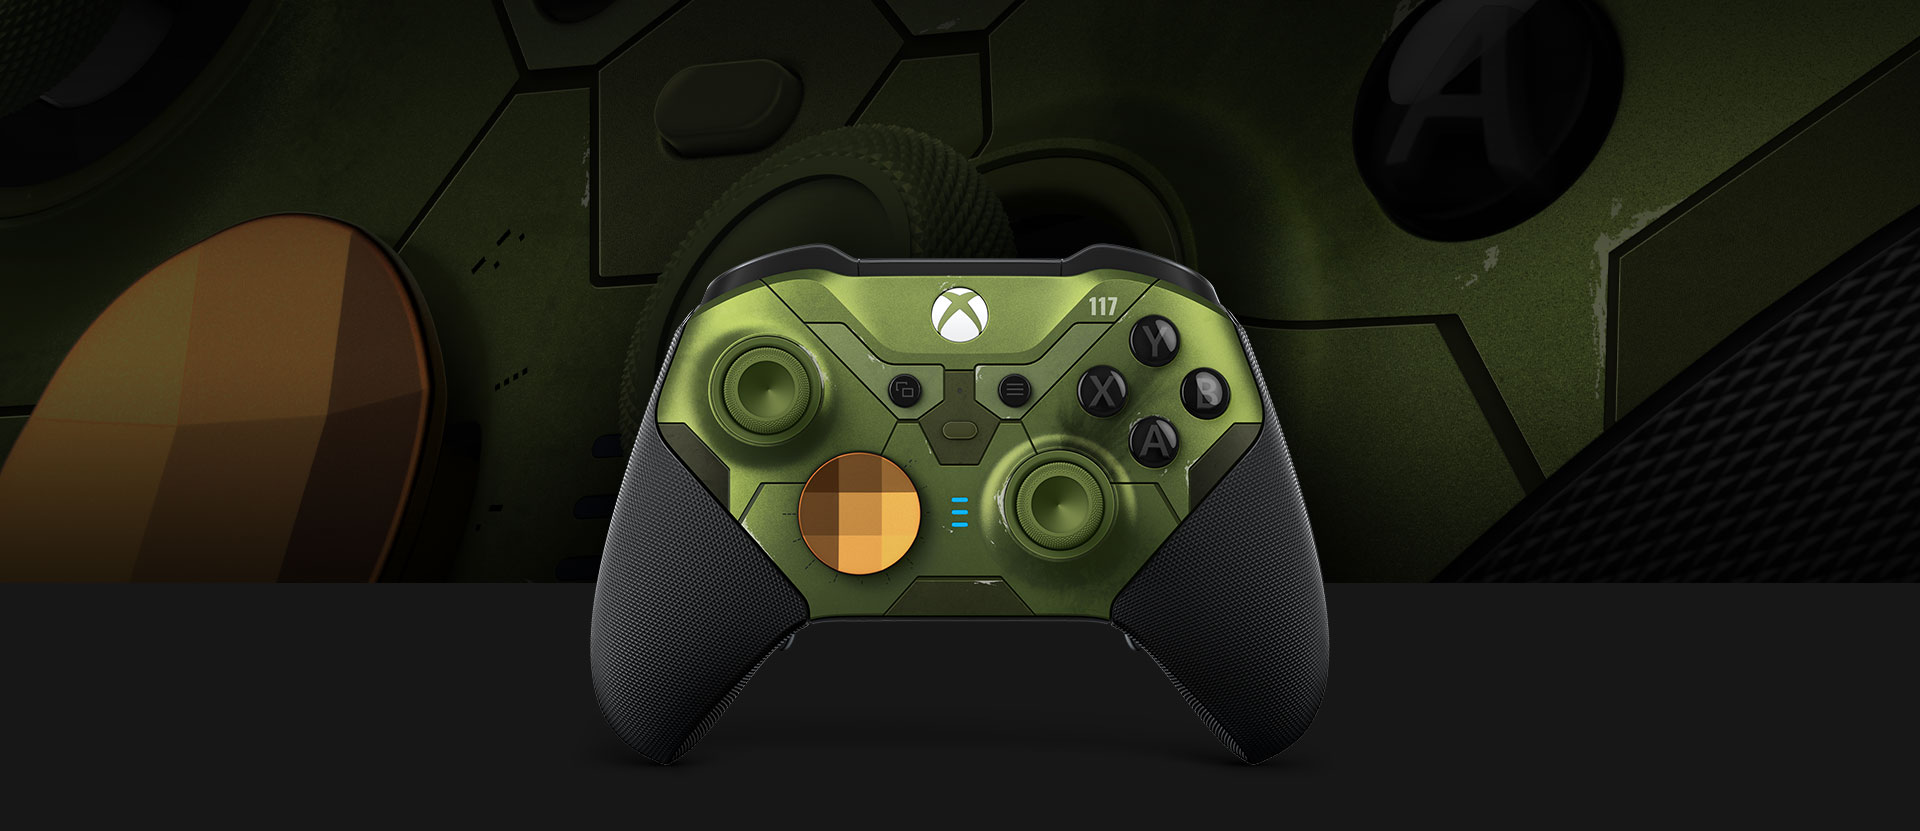 Pohľad spredu na bezdrôtový ovládač Xbox Elite Series 2 s detailným pohľadom na ovládač v pozadí